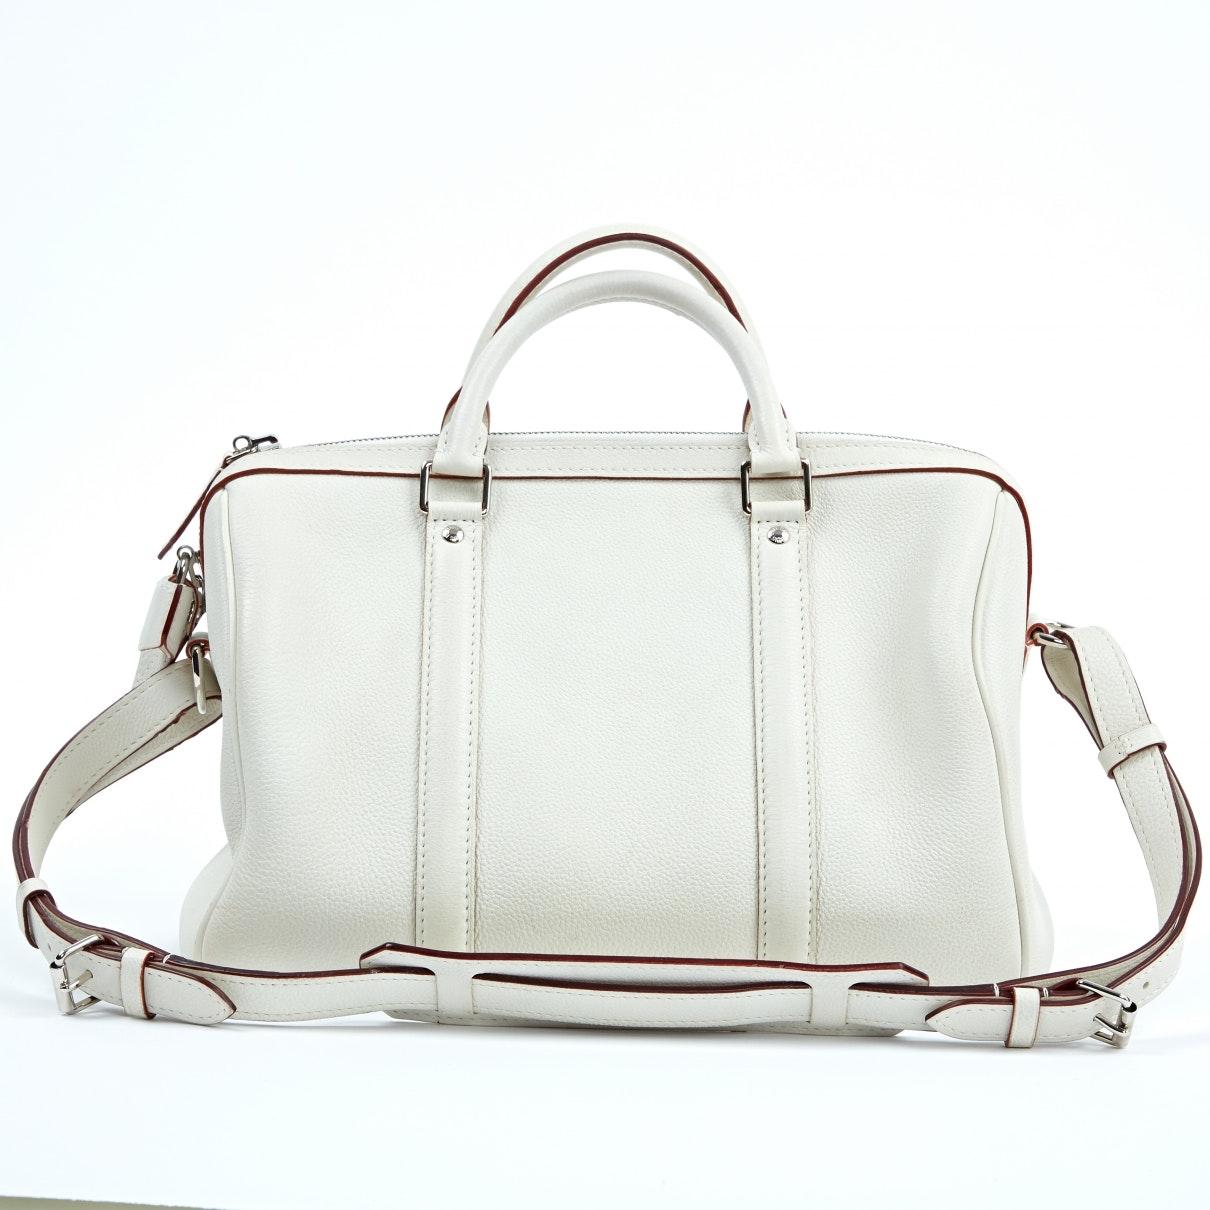 Louis Vuitton Sofia Coppola White Leather Handbag - Lyst